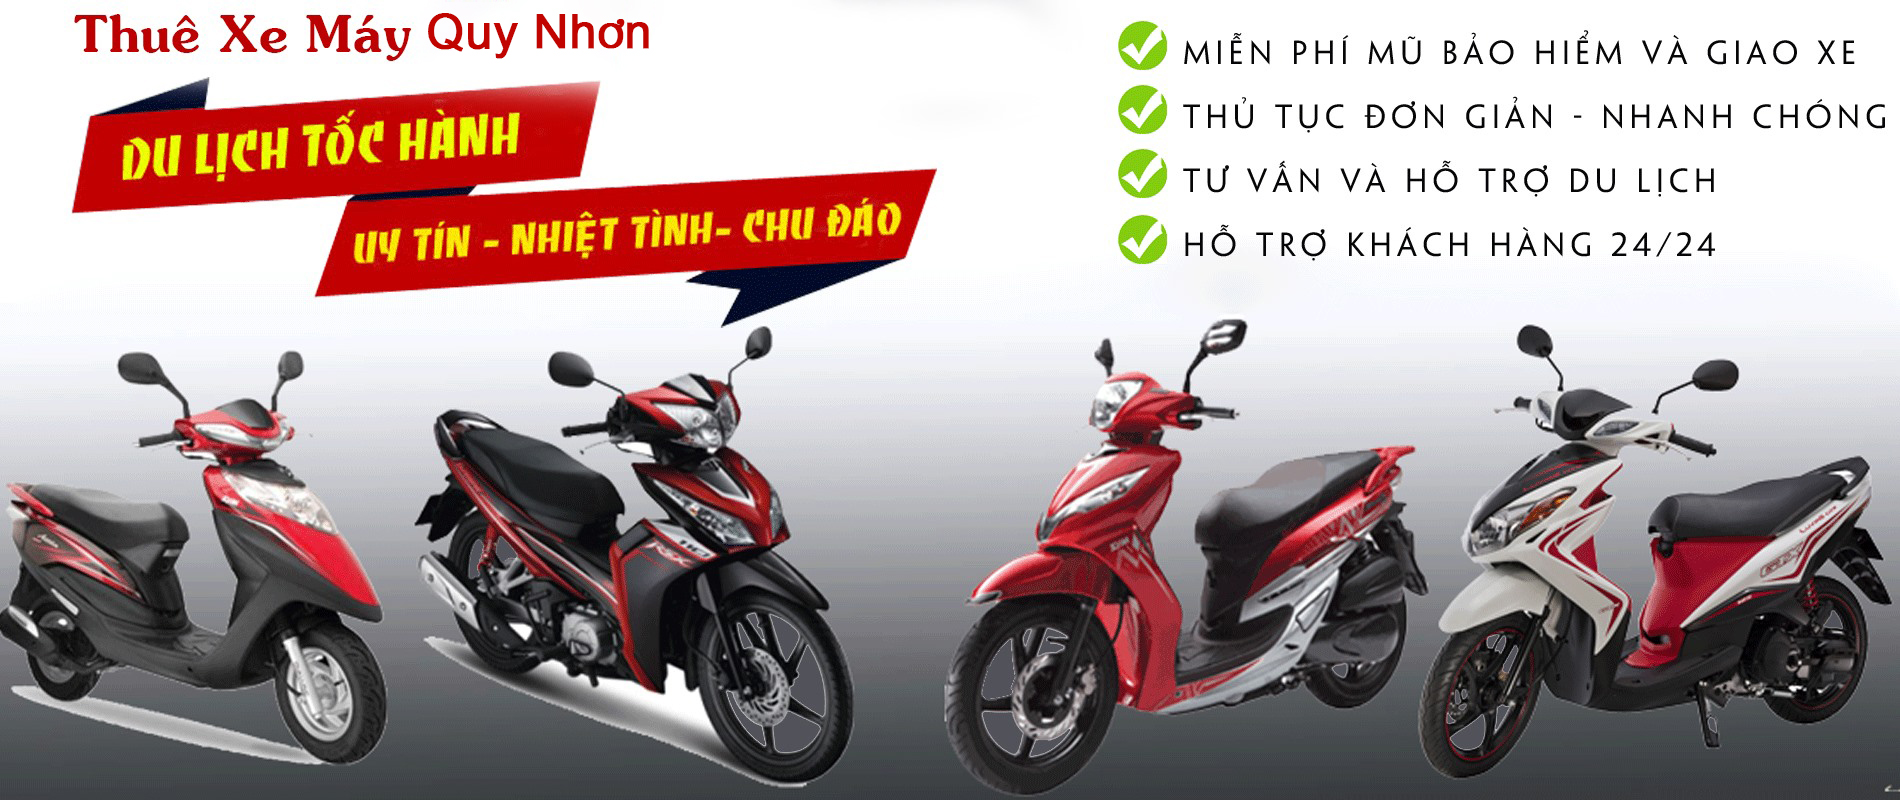 Top 9 Cửa hàng bán xe máy uy tín nhất TP Quy Nhơn Bình Định  toplistvn